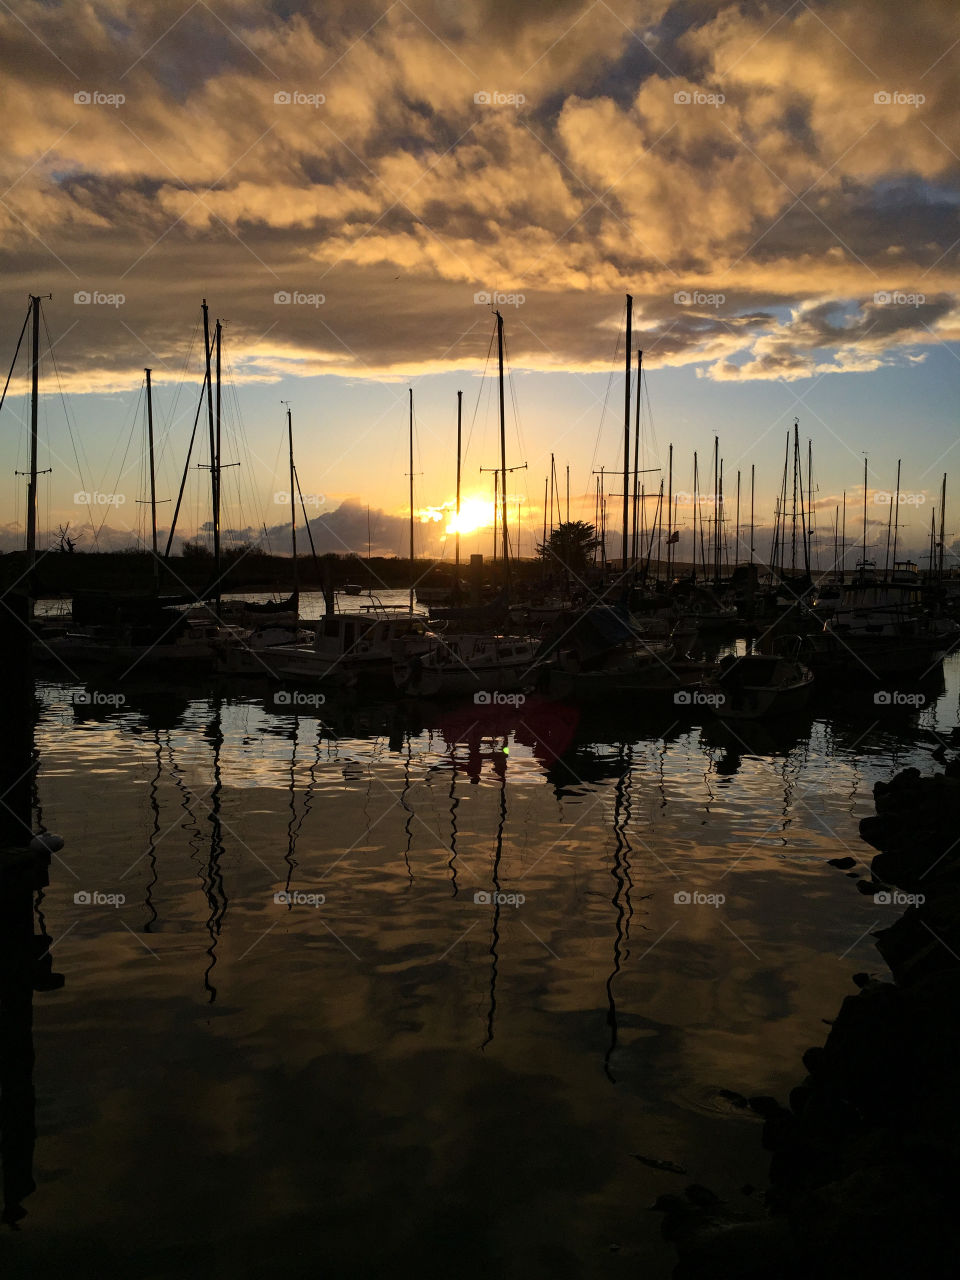 Marina at sunset